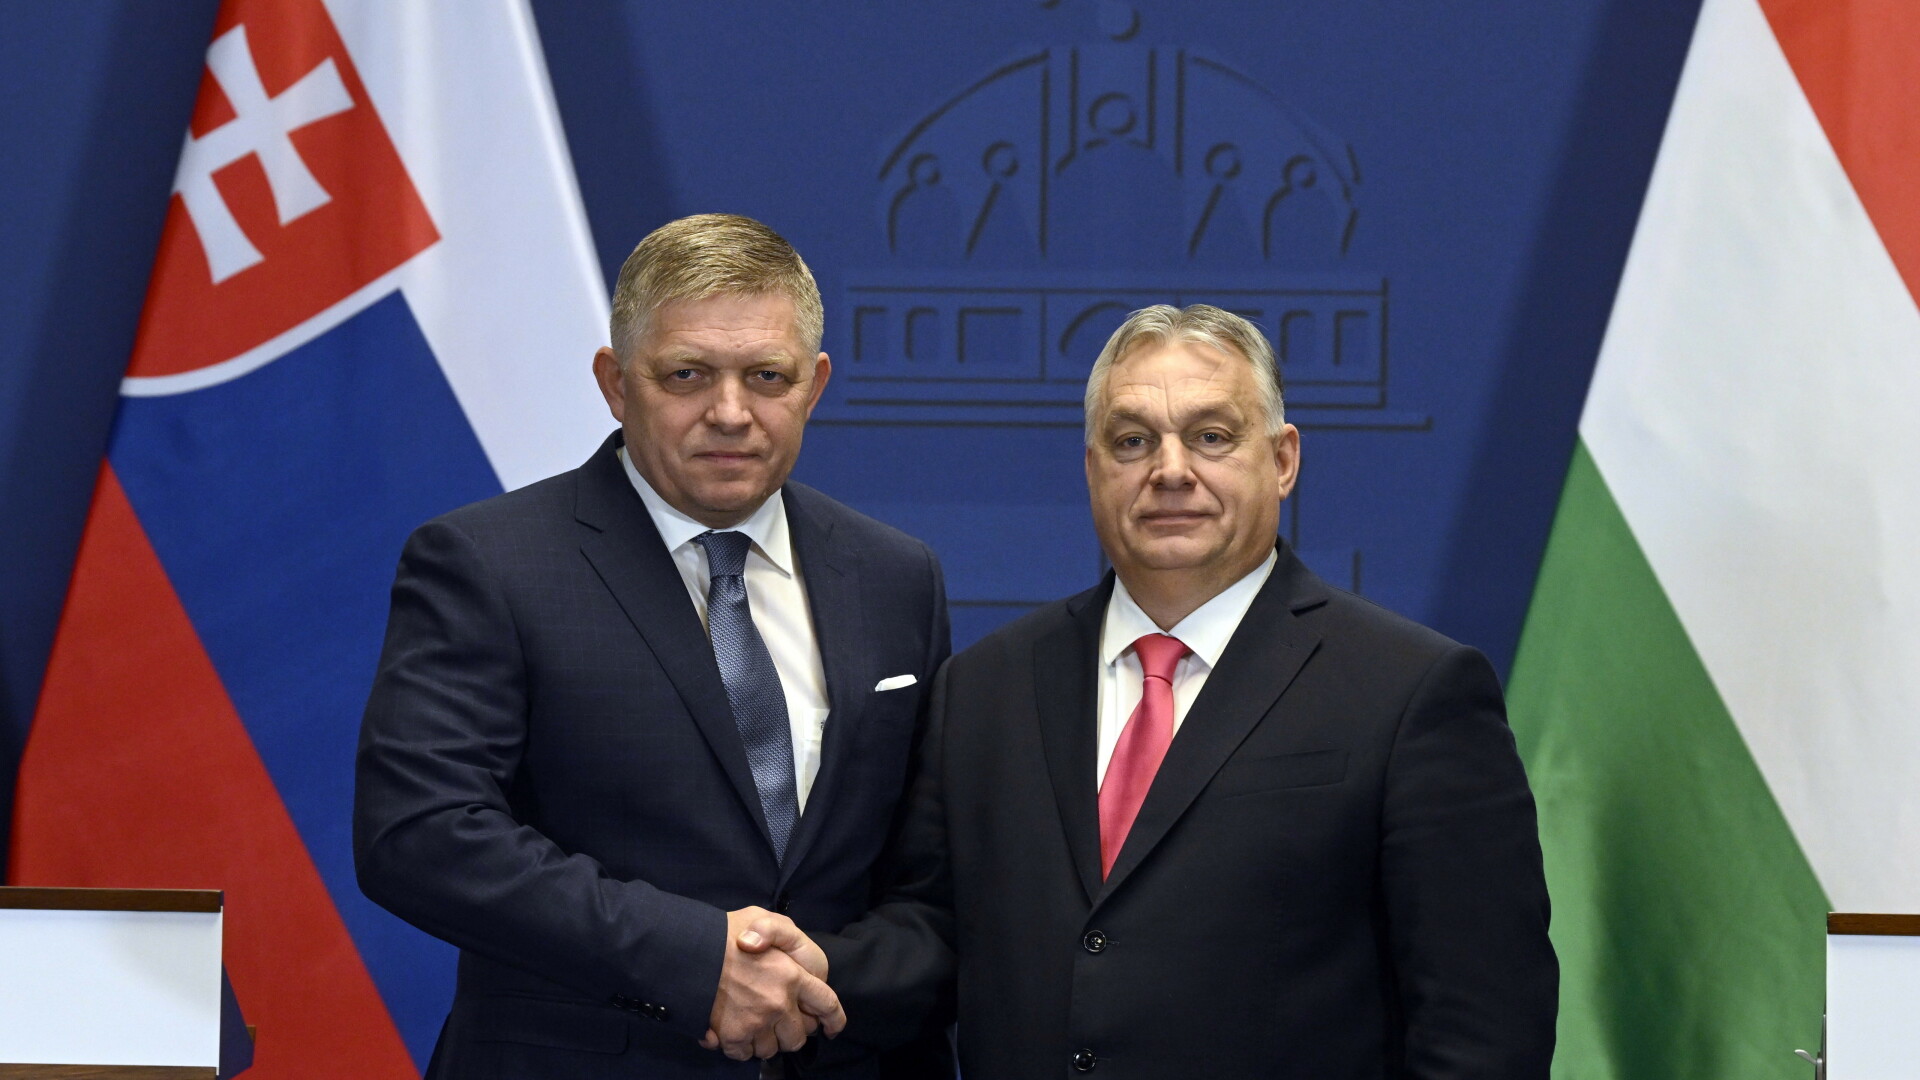 Robert Fico, Viktor Orban